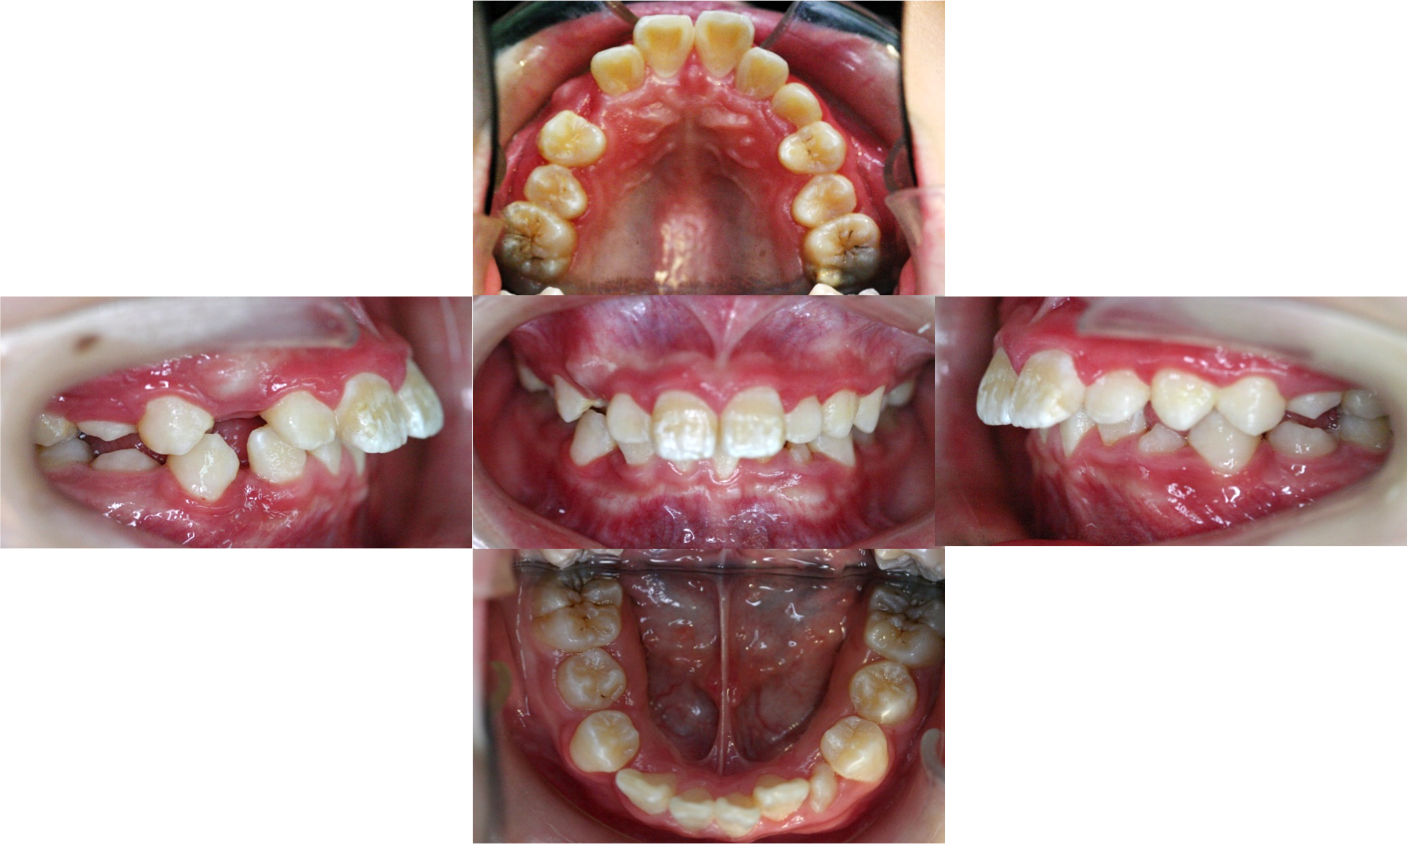 图3示 硬腭高拱,上牙弓狭窄,牙齿排列不齐,上牙前突